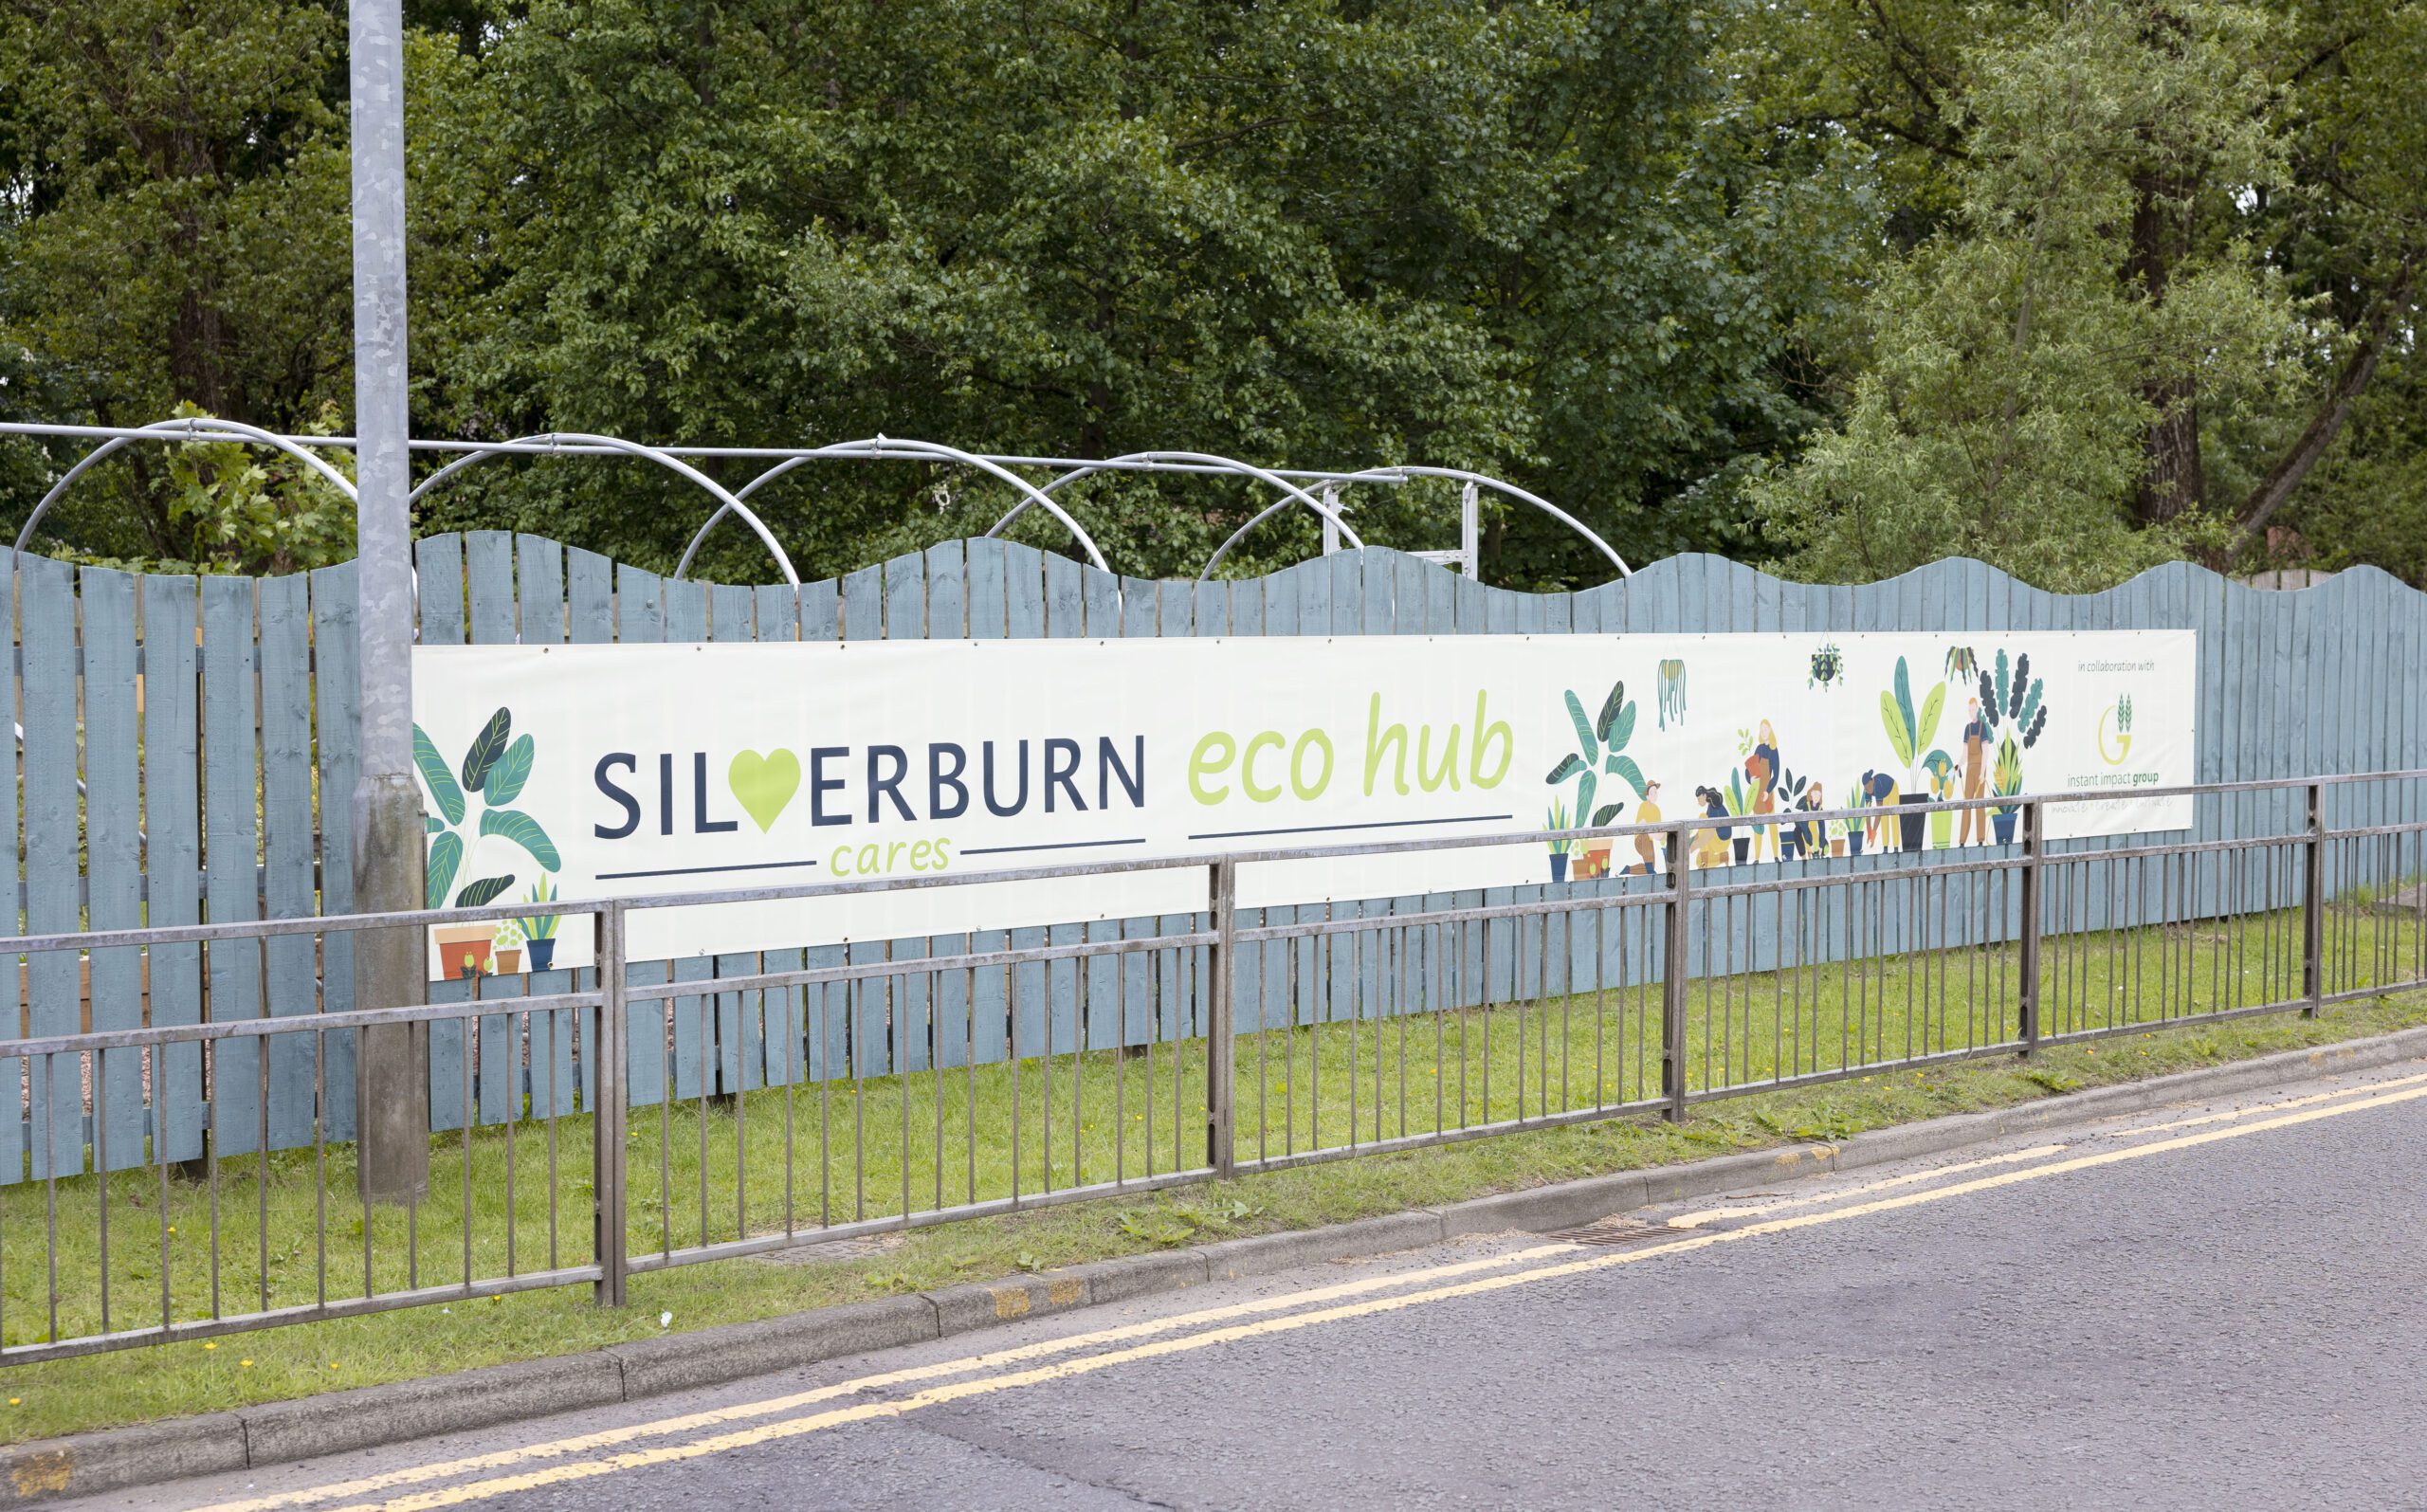 Silverburn eco hub